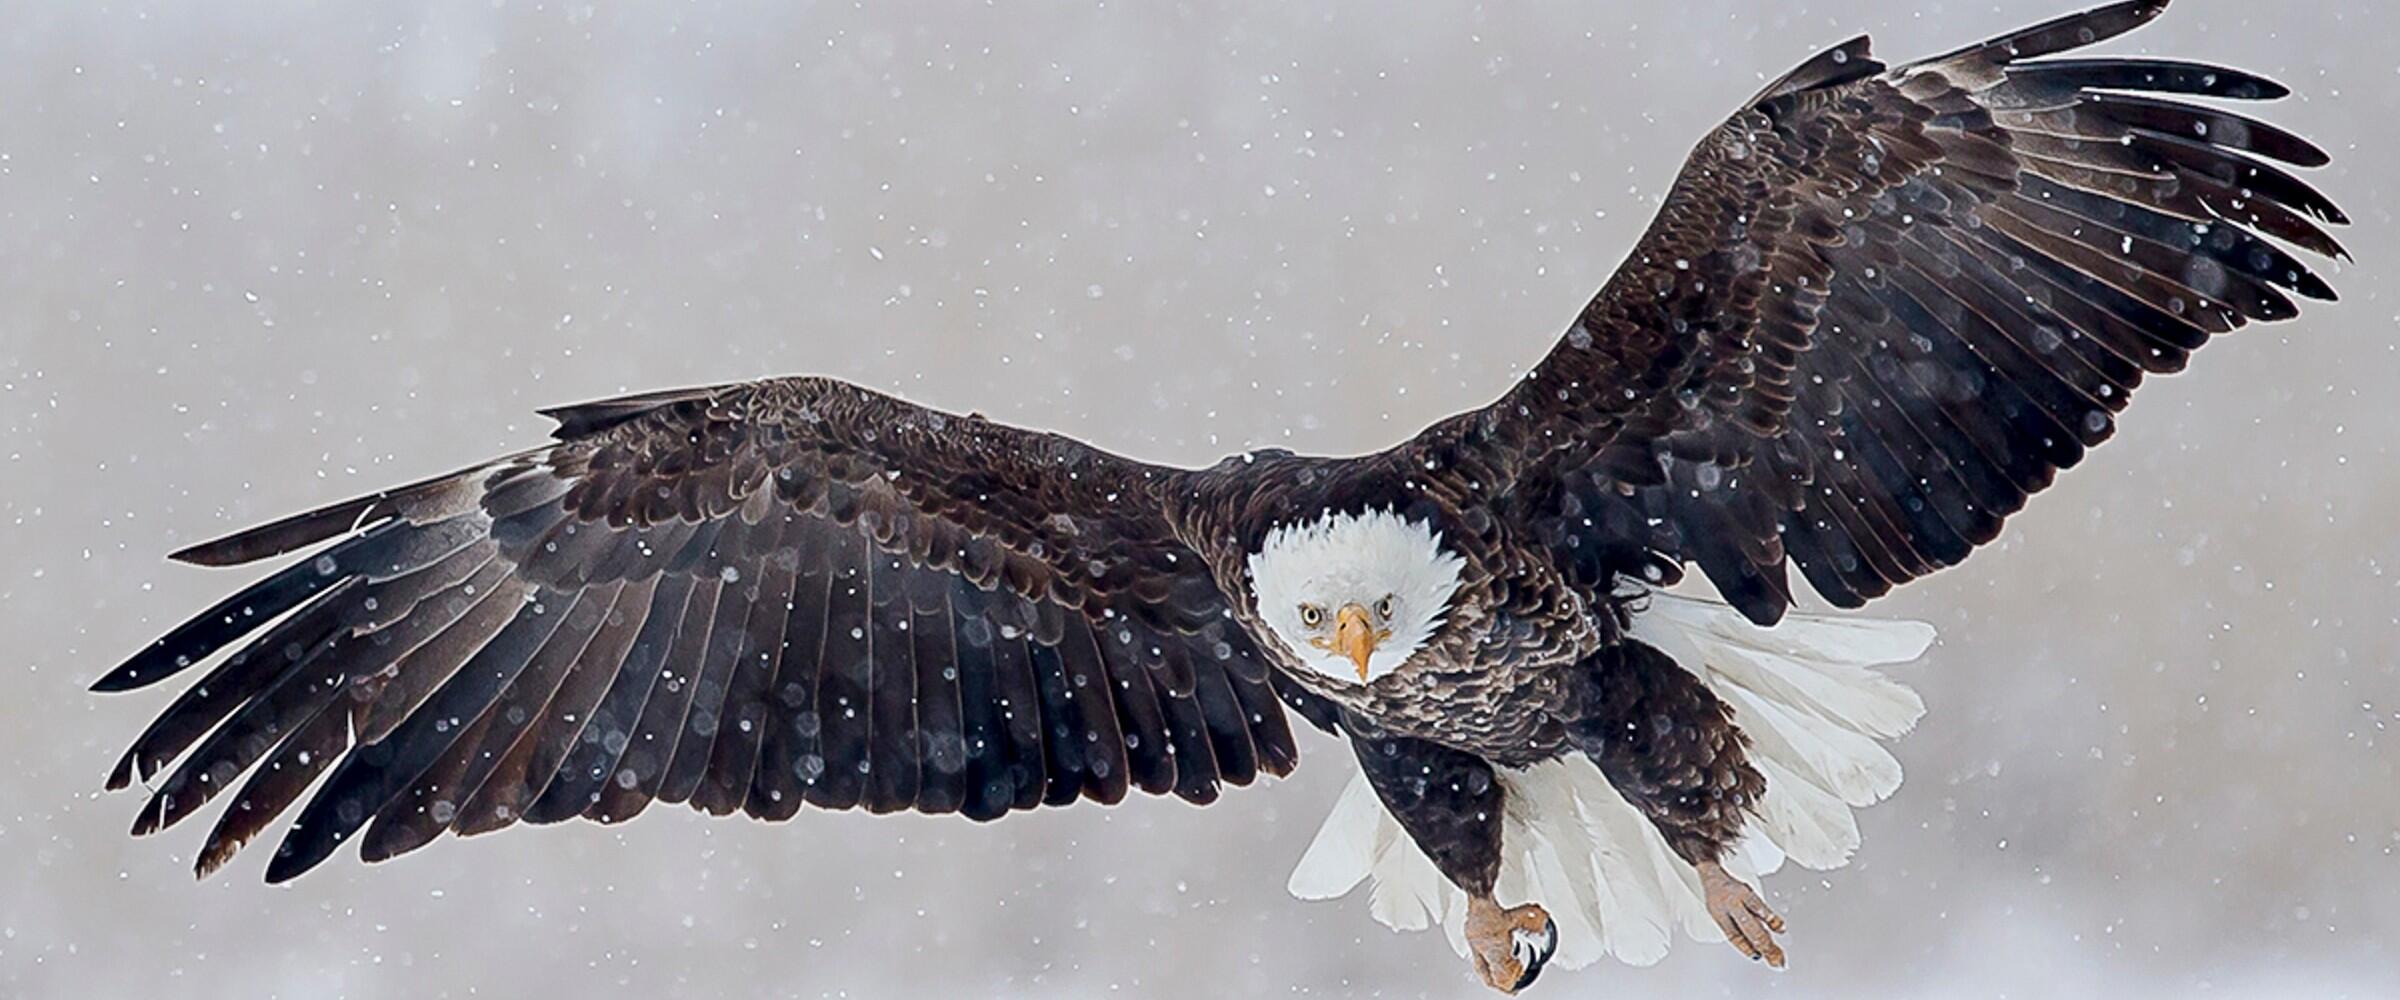 A Bald Eagle flying through snow. 